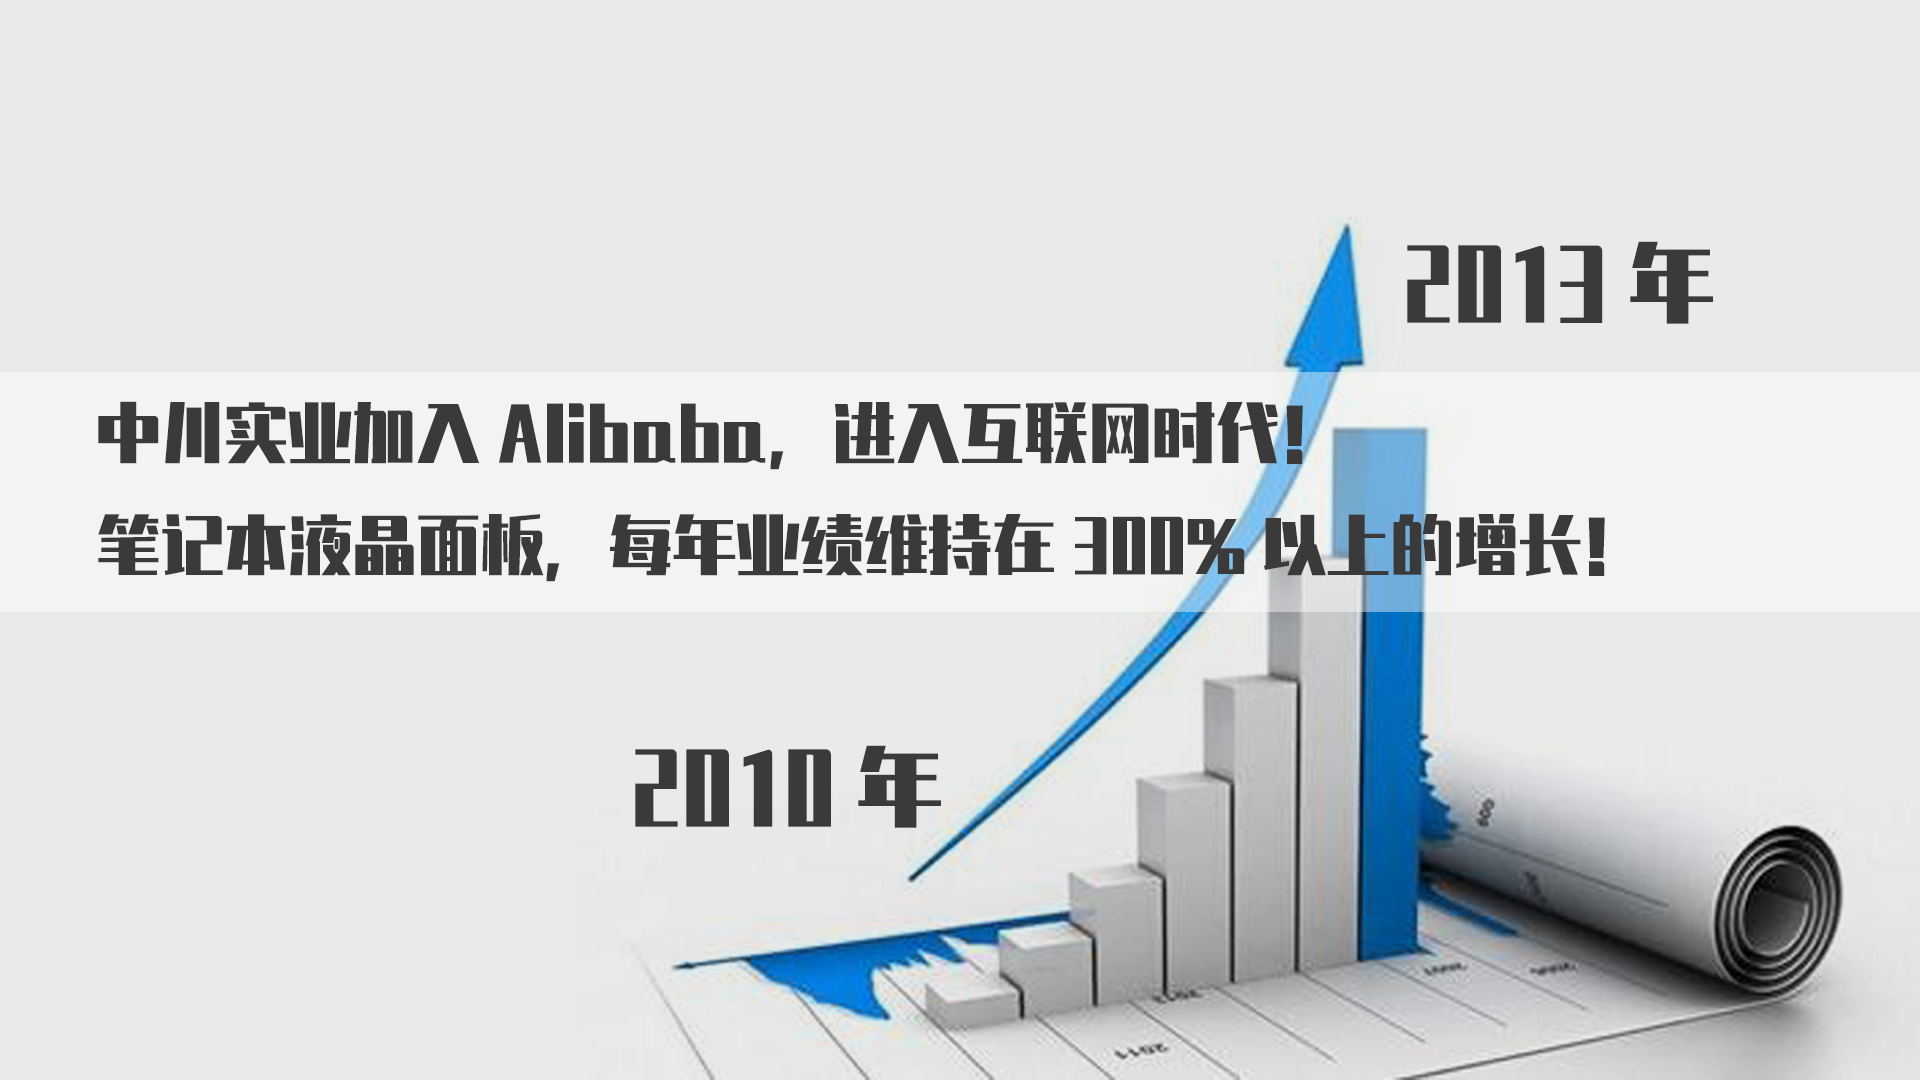 中川笔记本液晶面板，每年业绩维持在300%以上的增长